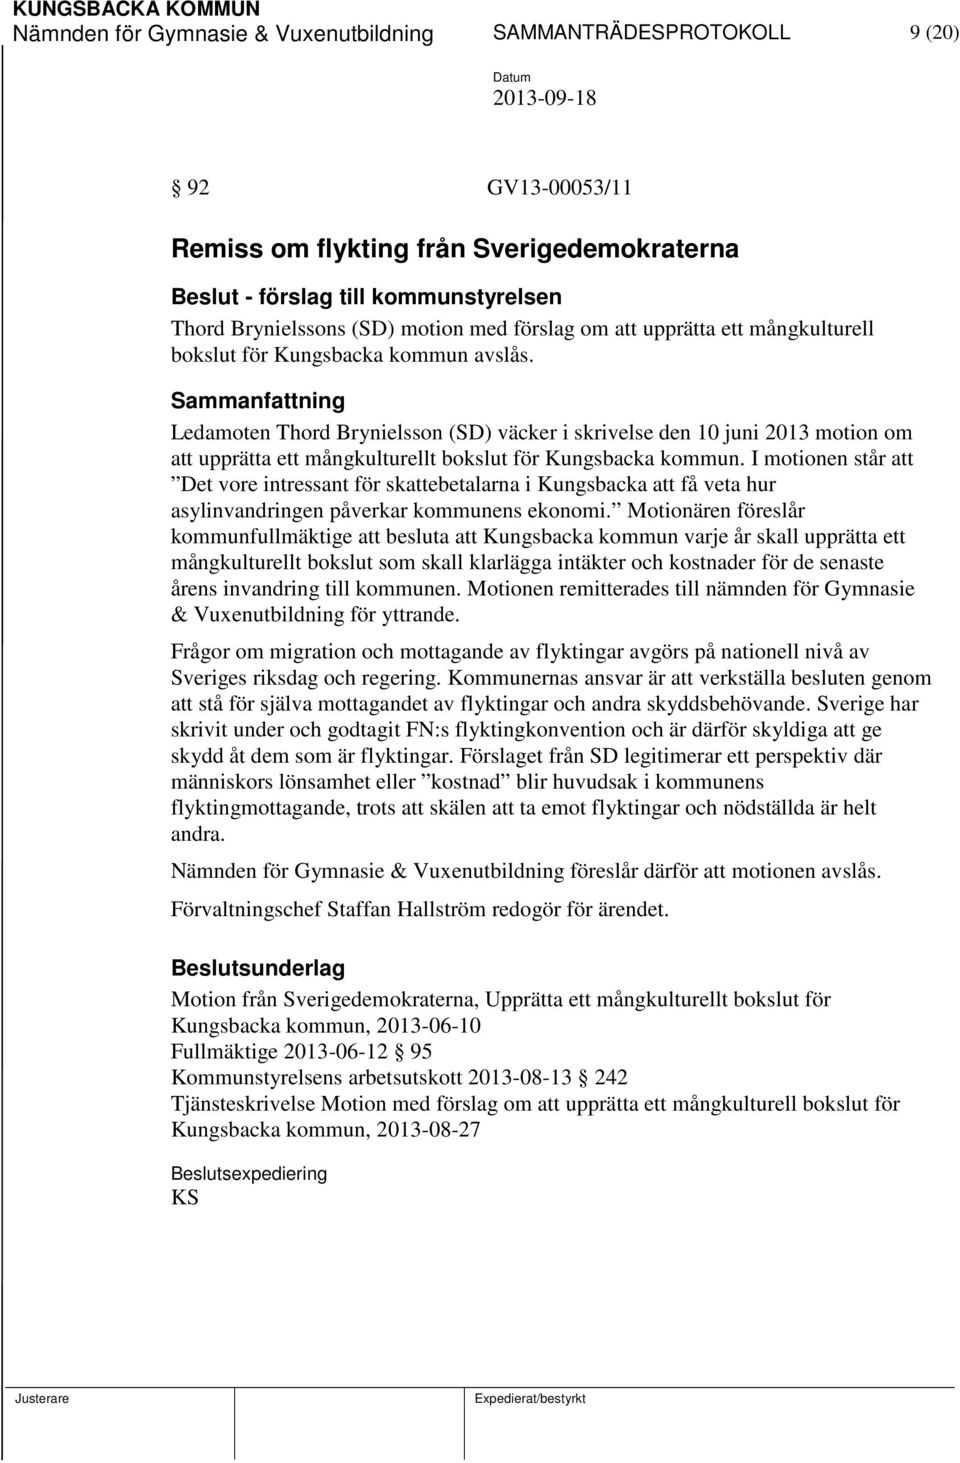 Ledamoten Thord Brynielsson (SD) väcker i skrivelse den 10 juni 2013 motion om att upprätta ett mångkulturellt bokslut för Kungsbacka kommun.